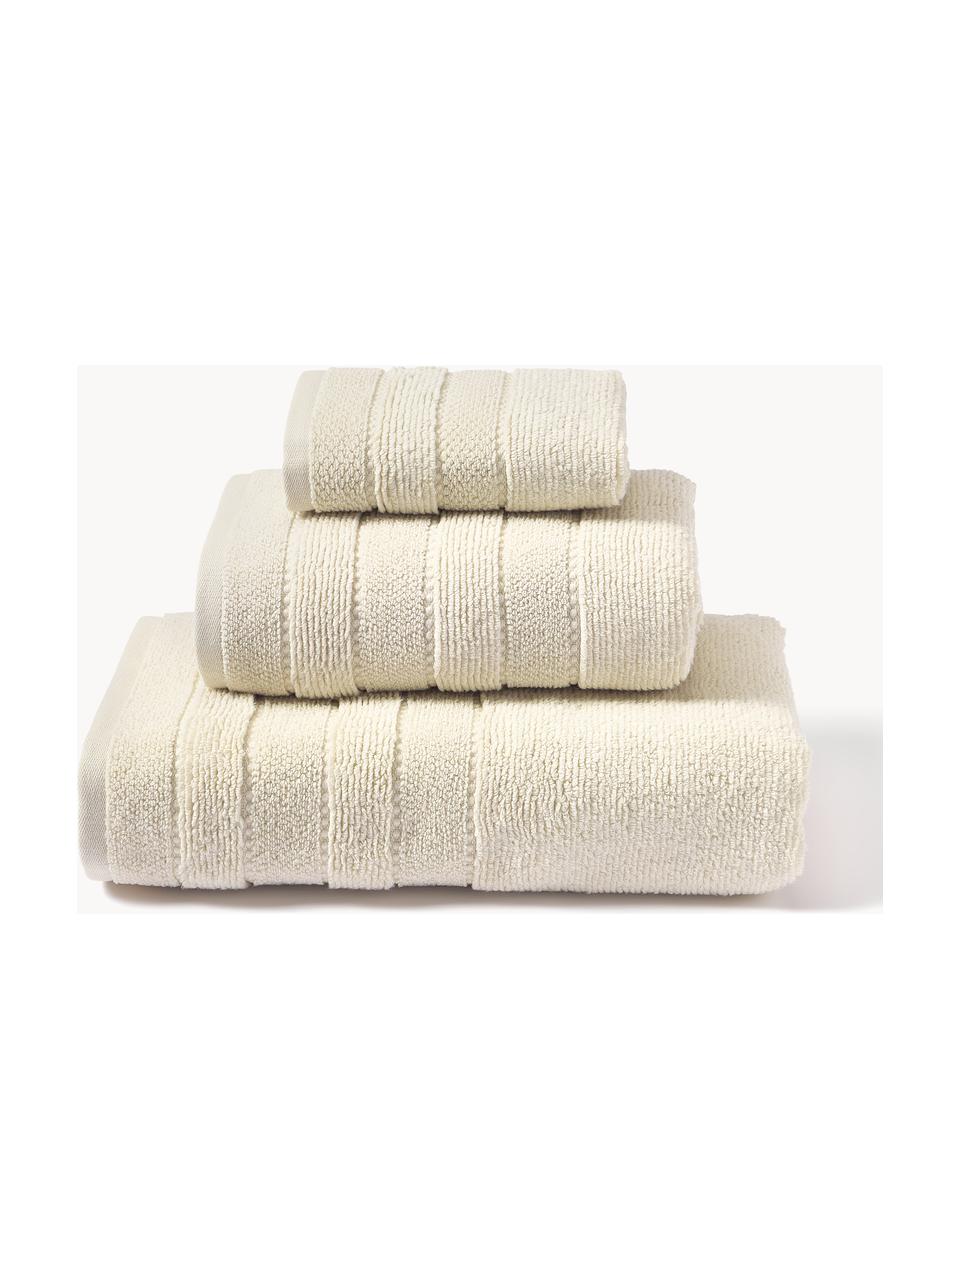 Komplet ręczników Luxe, 3 elem., Złamana biel, Komplet z różnymi rozmiarami